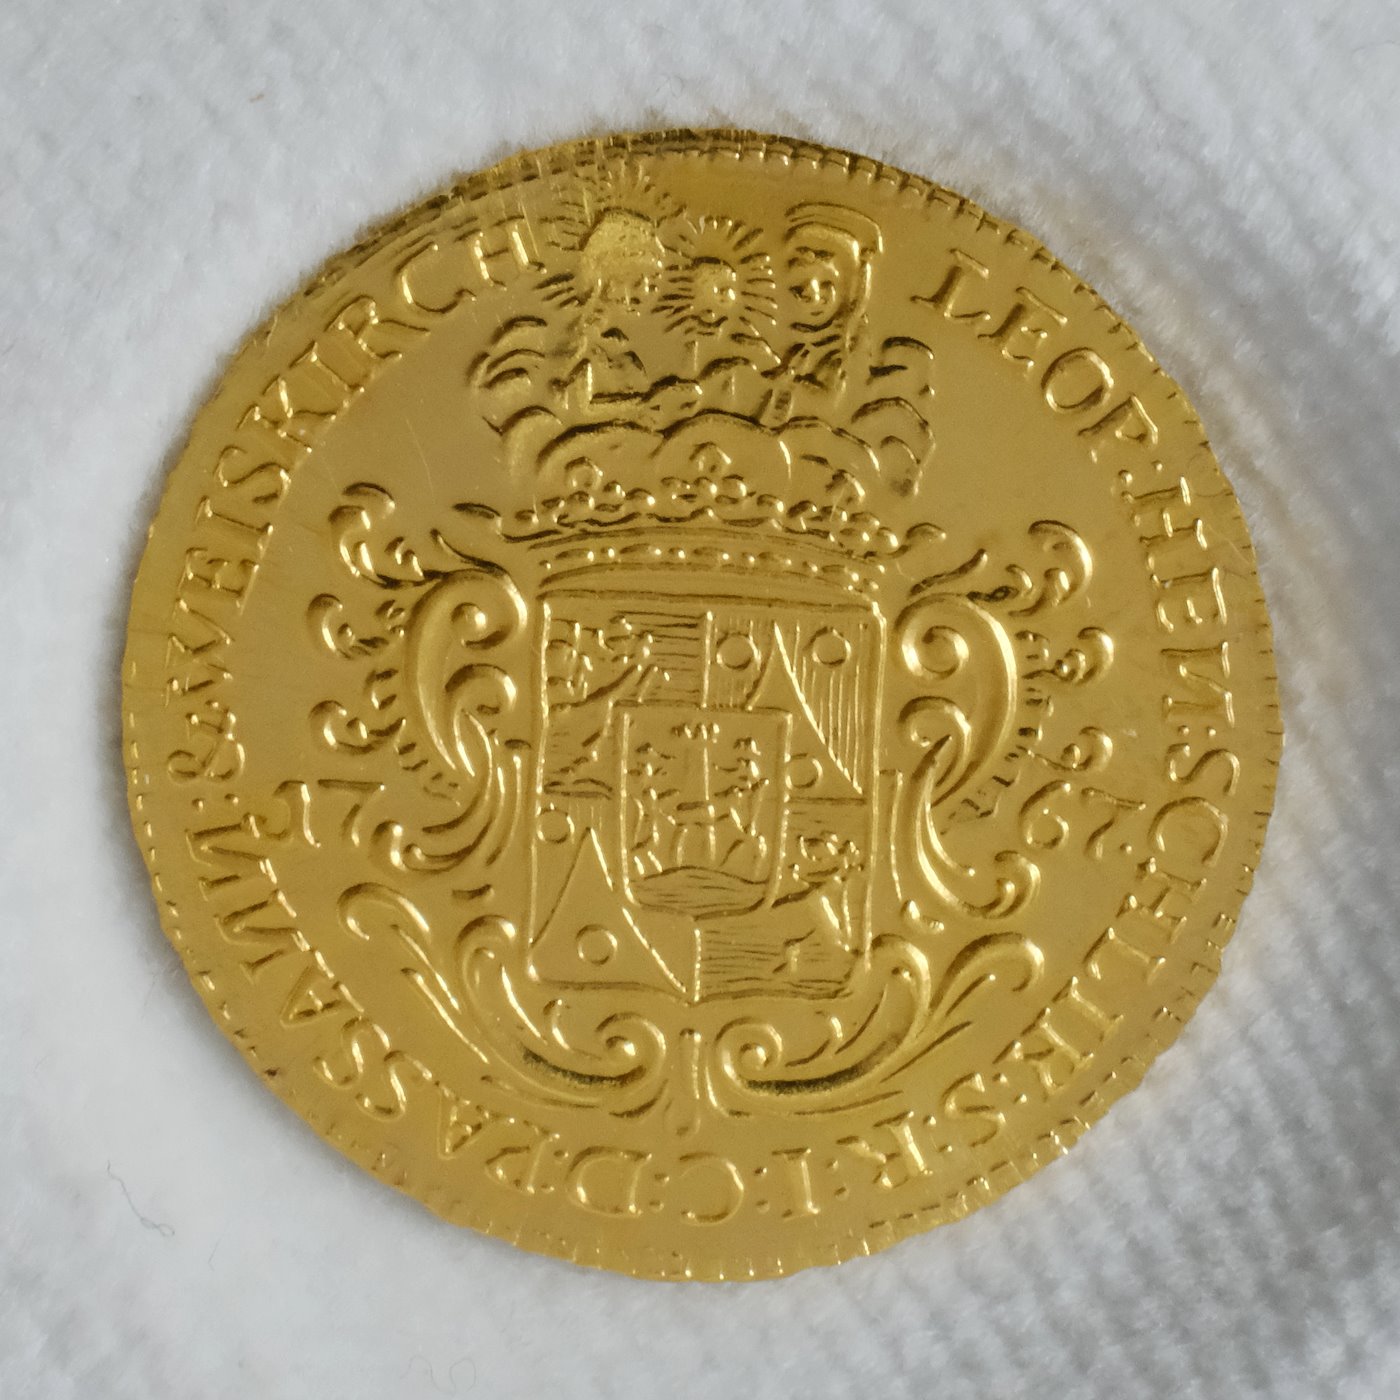 Mince - Schlikovský dukát 1767, zlatá replika dukátu z roku 2019 číslo 145/150, zlato 986/1000, hrubá hmotnost 3,5g